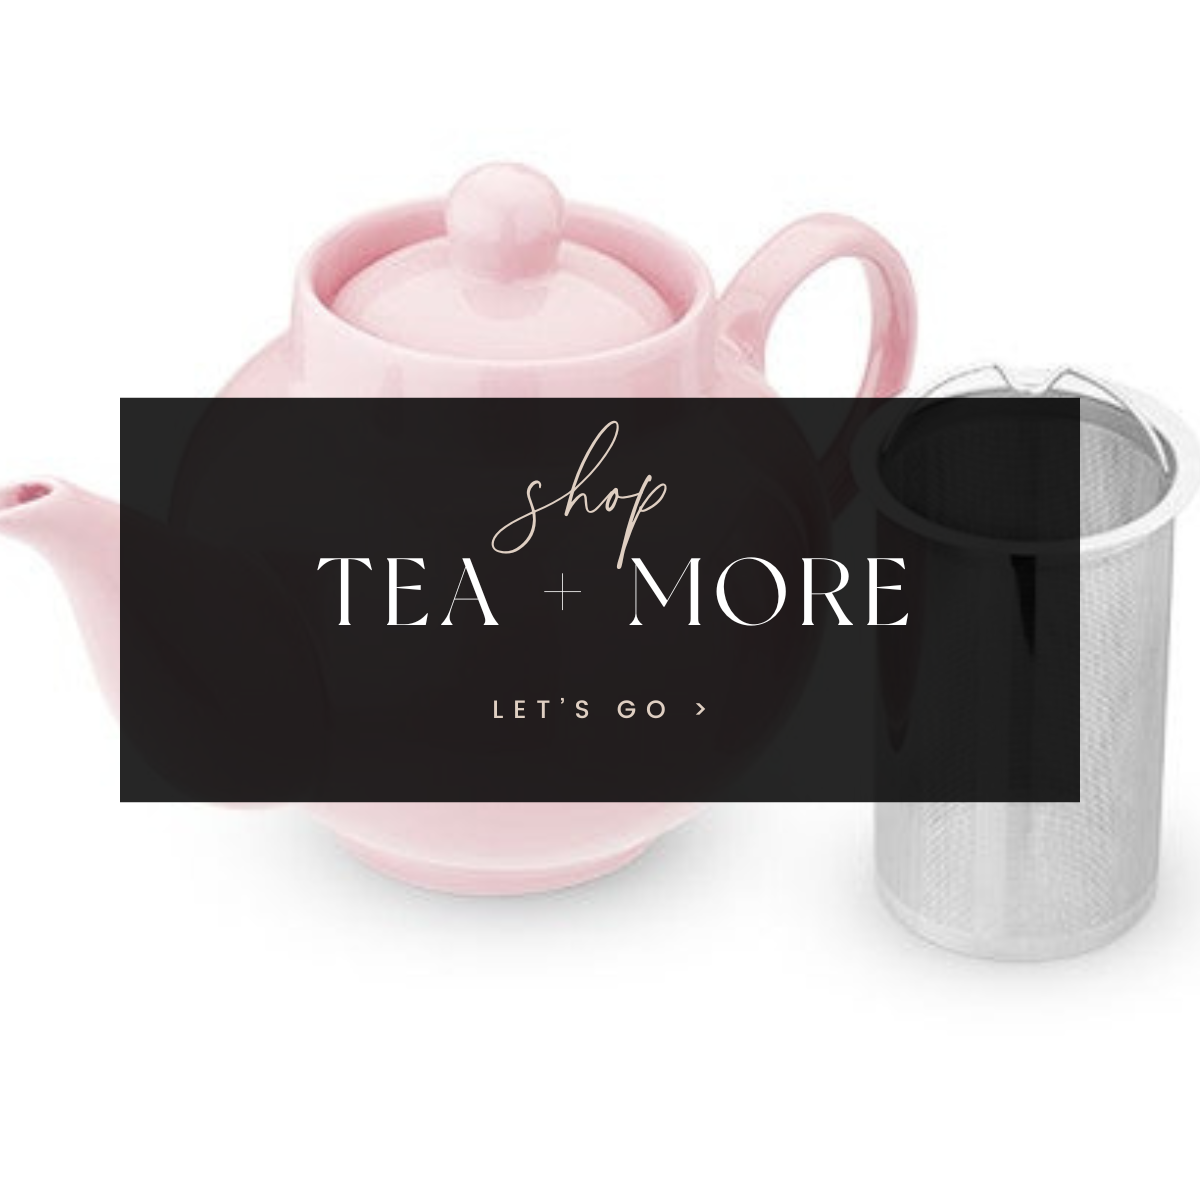 Tea + More